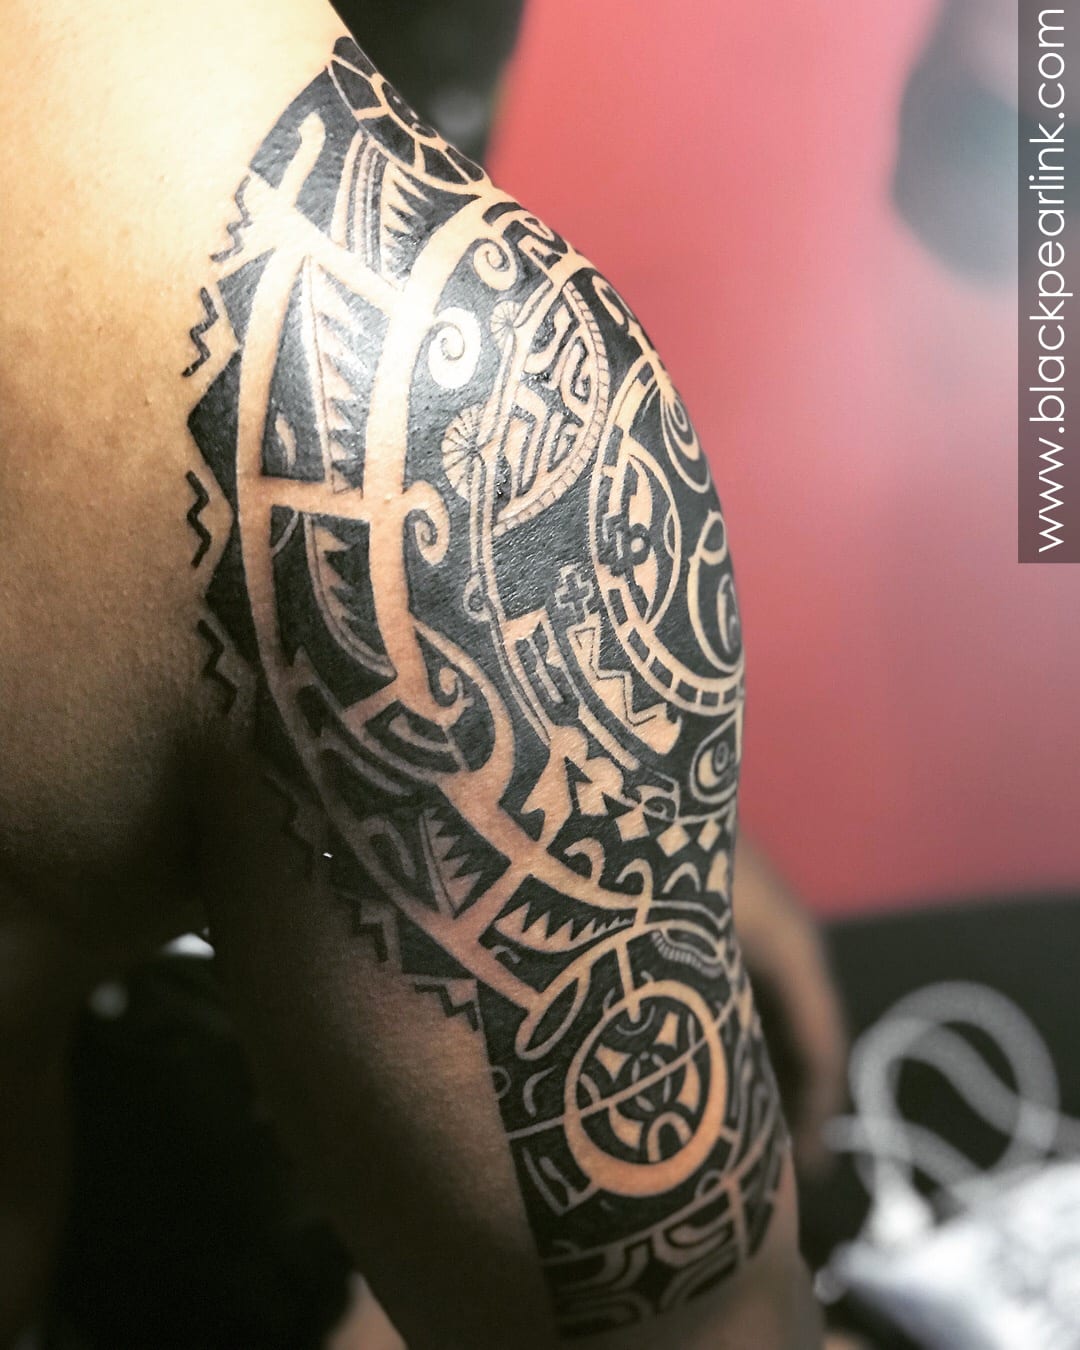 Samoan Tattoo Design Ideas and Pictures - Tattdiz